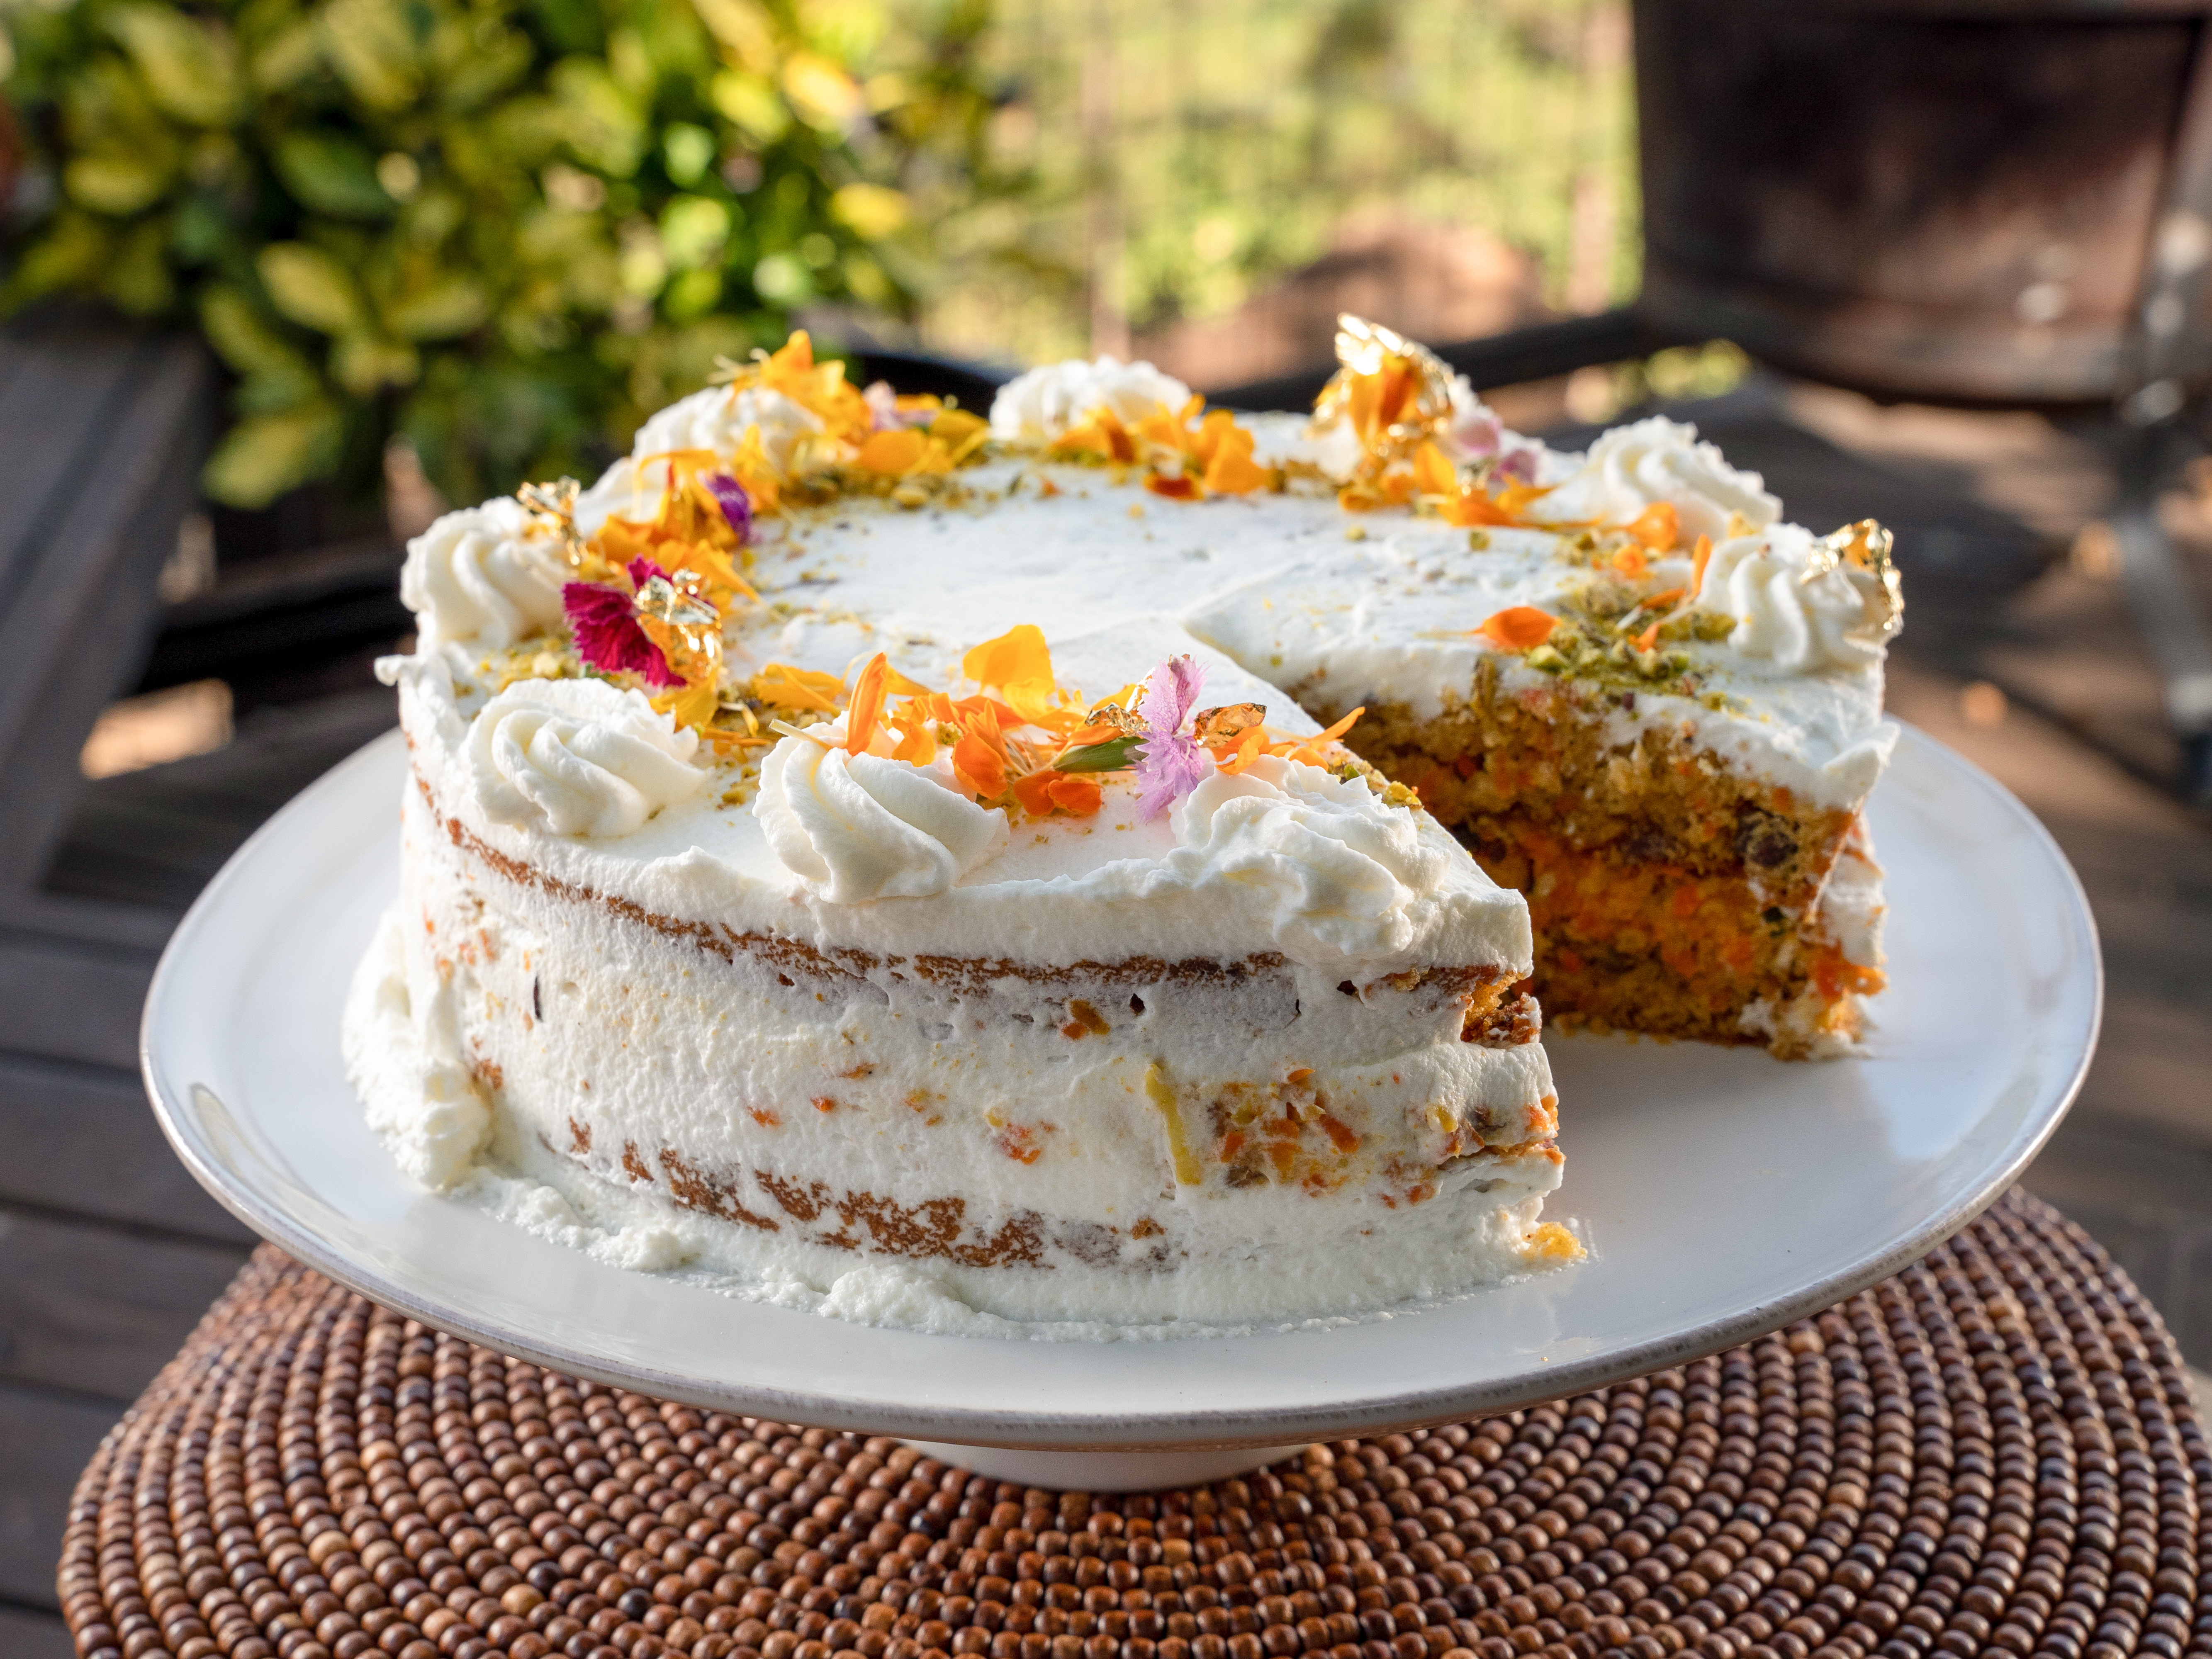 Daisy's Carrot Cake – Daisy Cakes